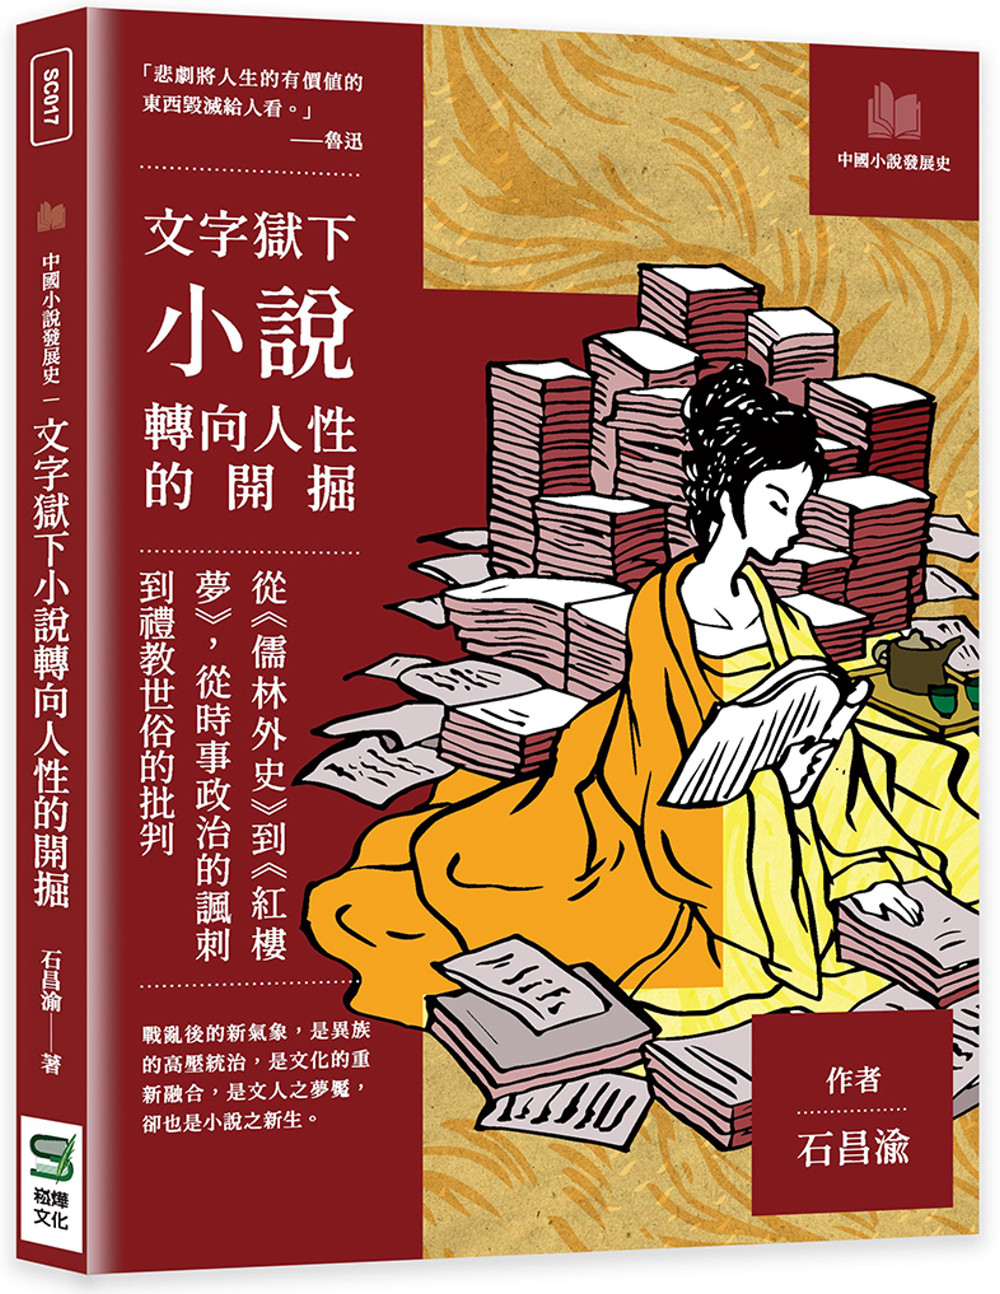 文字獄下小說轉向人性的開掘：從《儒林外史》到《紅樓夢》，從時事政治的諷刺到禮教世俗的批判